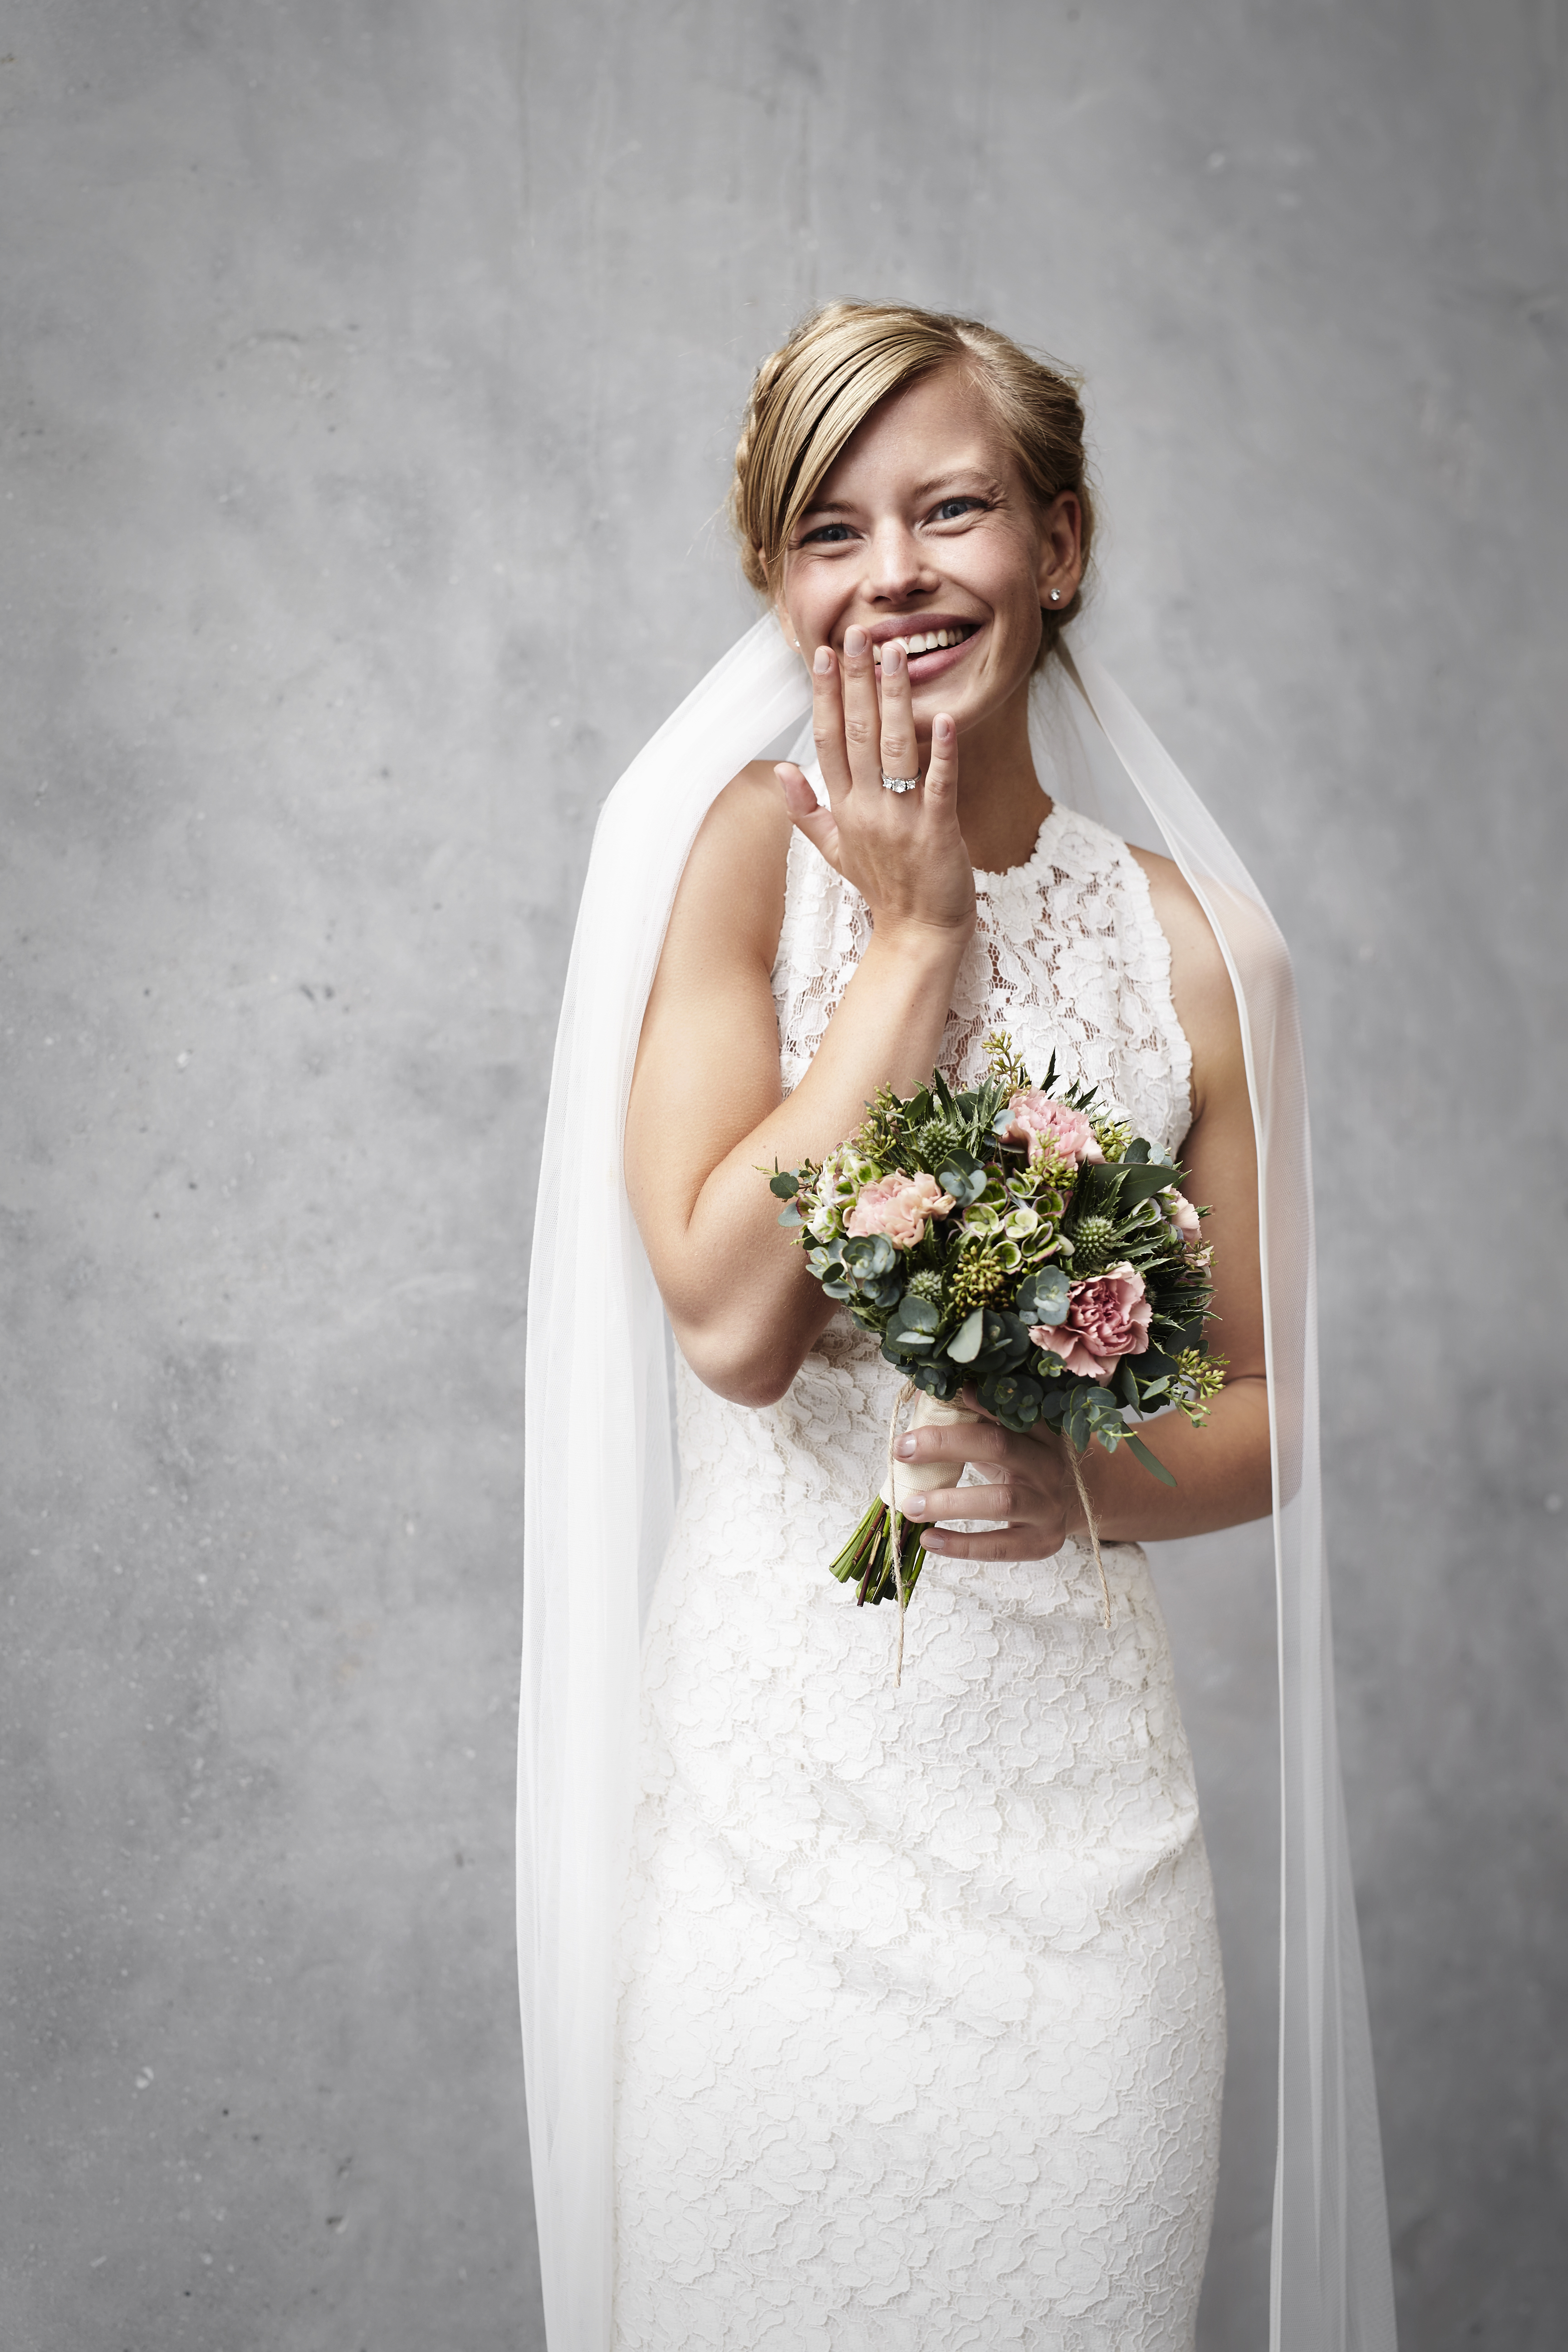 Una novia riendo mientras sostiene su ramo | Fuente: Shutterstock